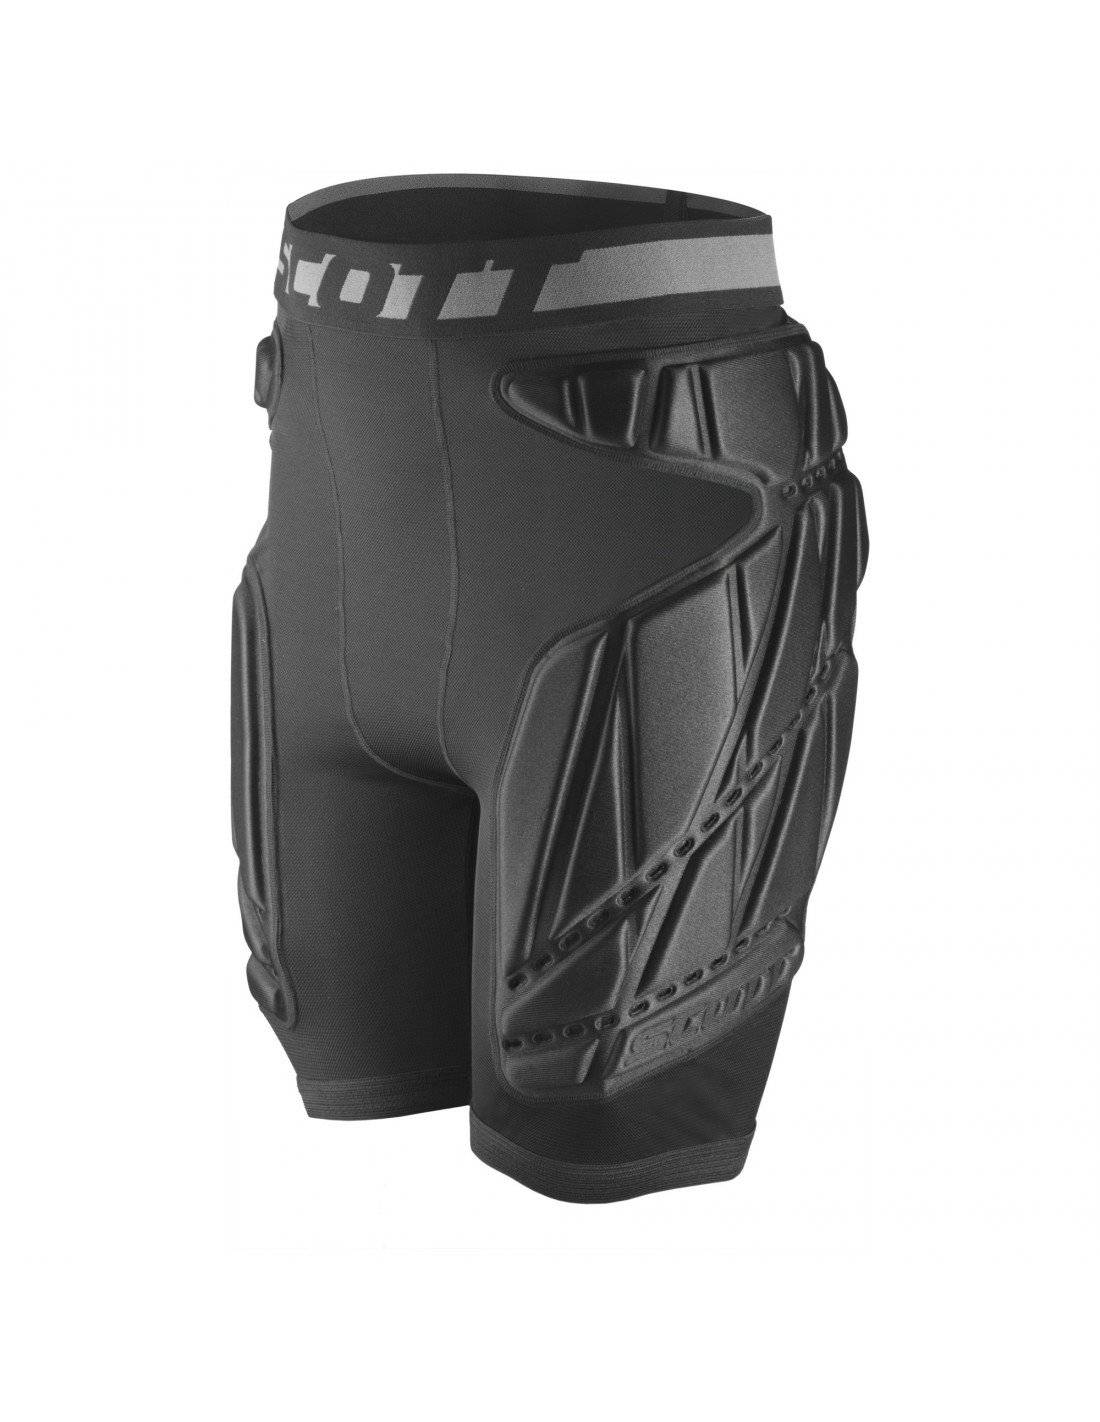 Велозащита (ног) SCOTT Light Padded Shorts, black (Черный), 2019, 244216-0001, Вариант УТ-00142598: Размер: S, изображение  - НаВелосипеде.рф